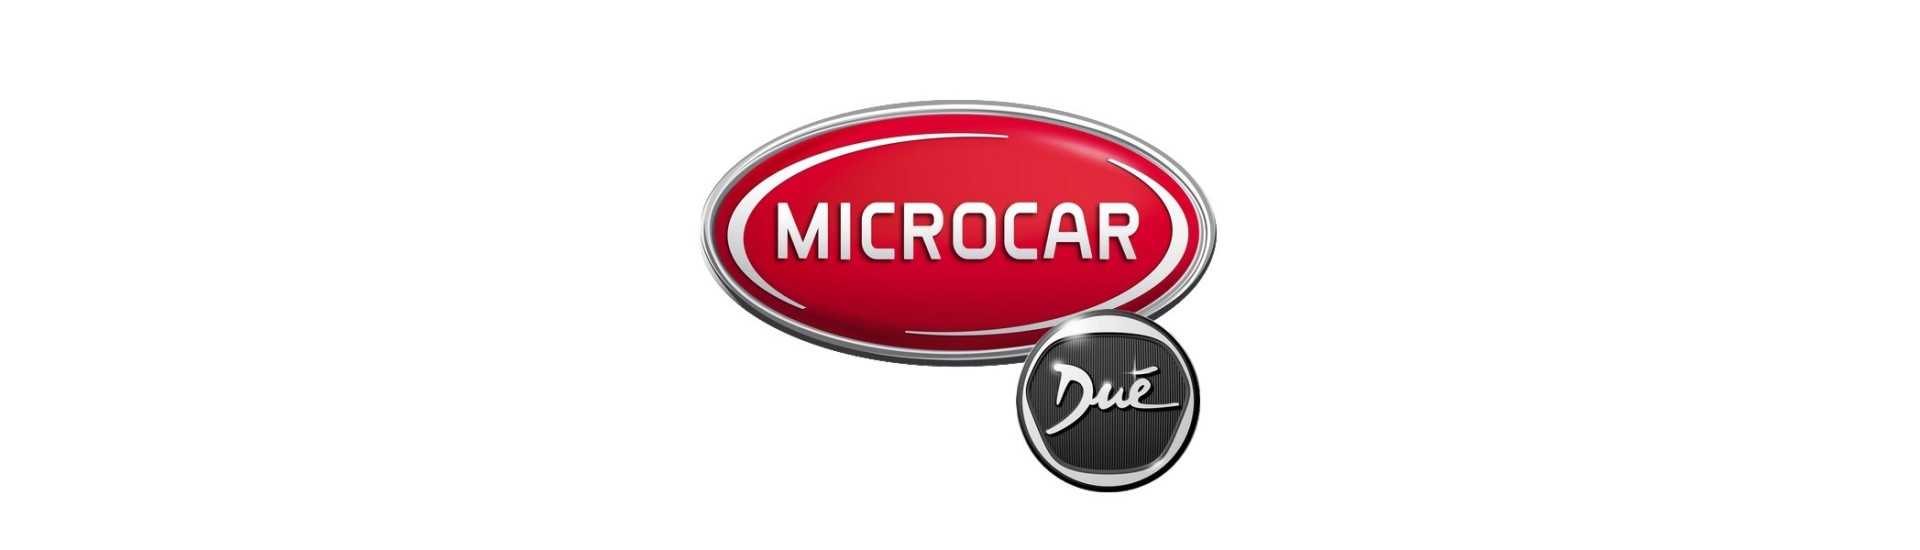 Fyr till bästa pris för bil utan tillstånd Microcar Dué